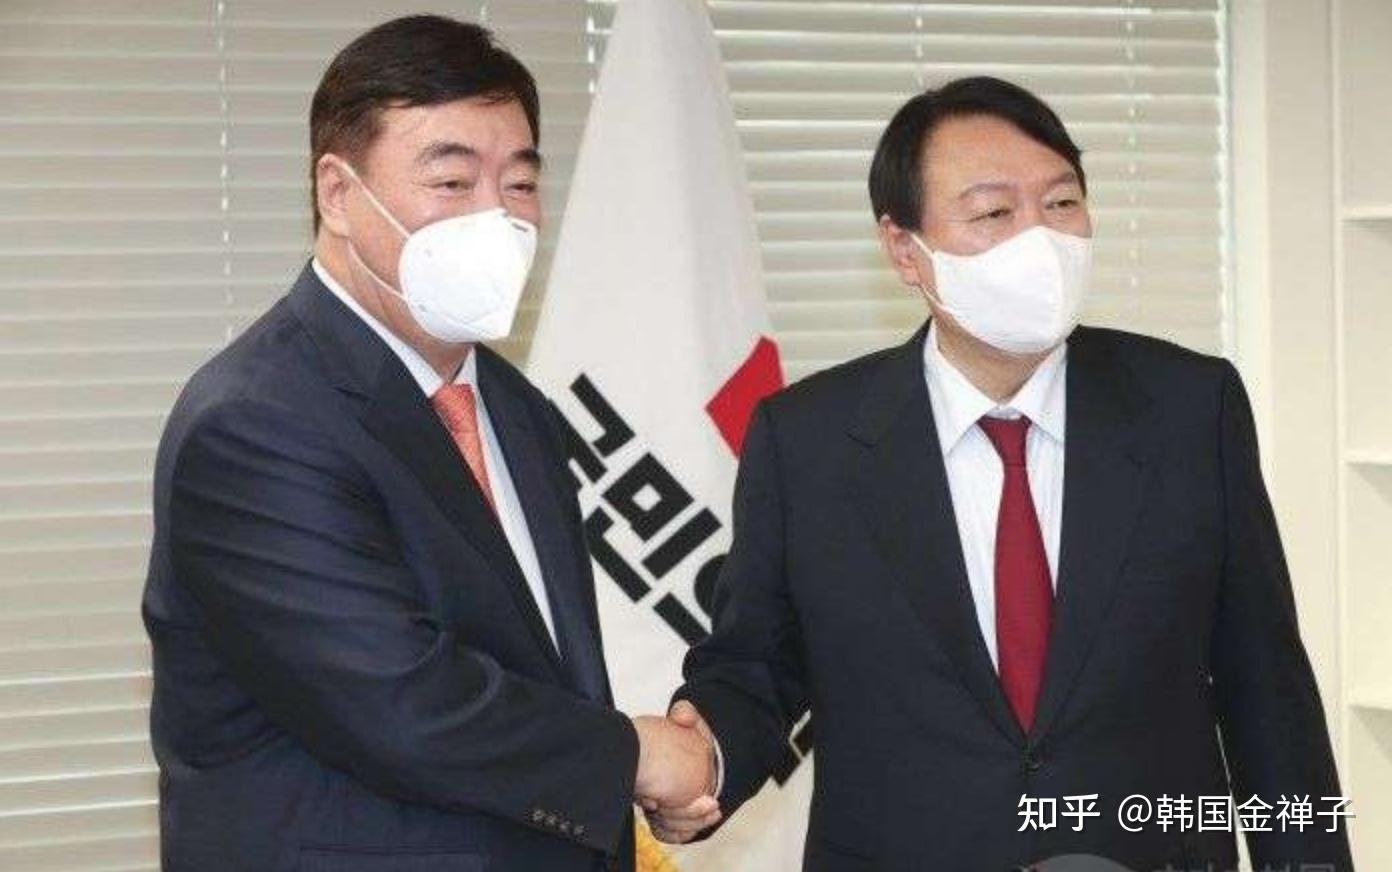 尹锡悦就任韩国总统 国内外面对不小挑战 - 国际 - 即时国际